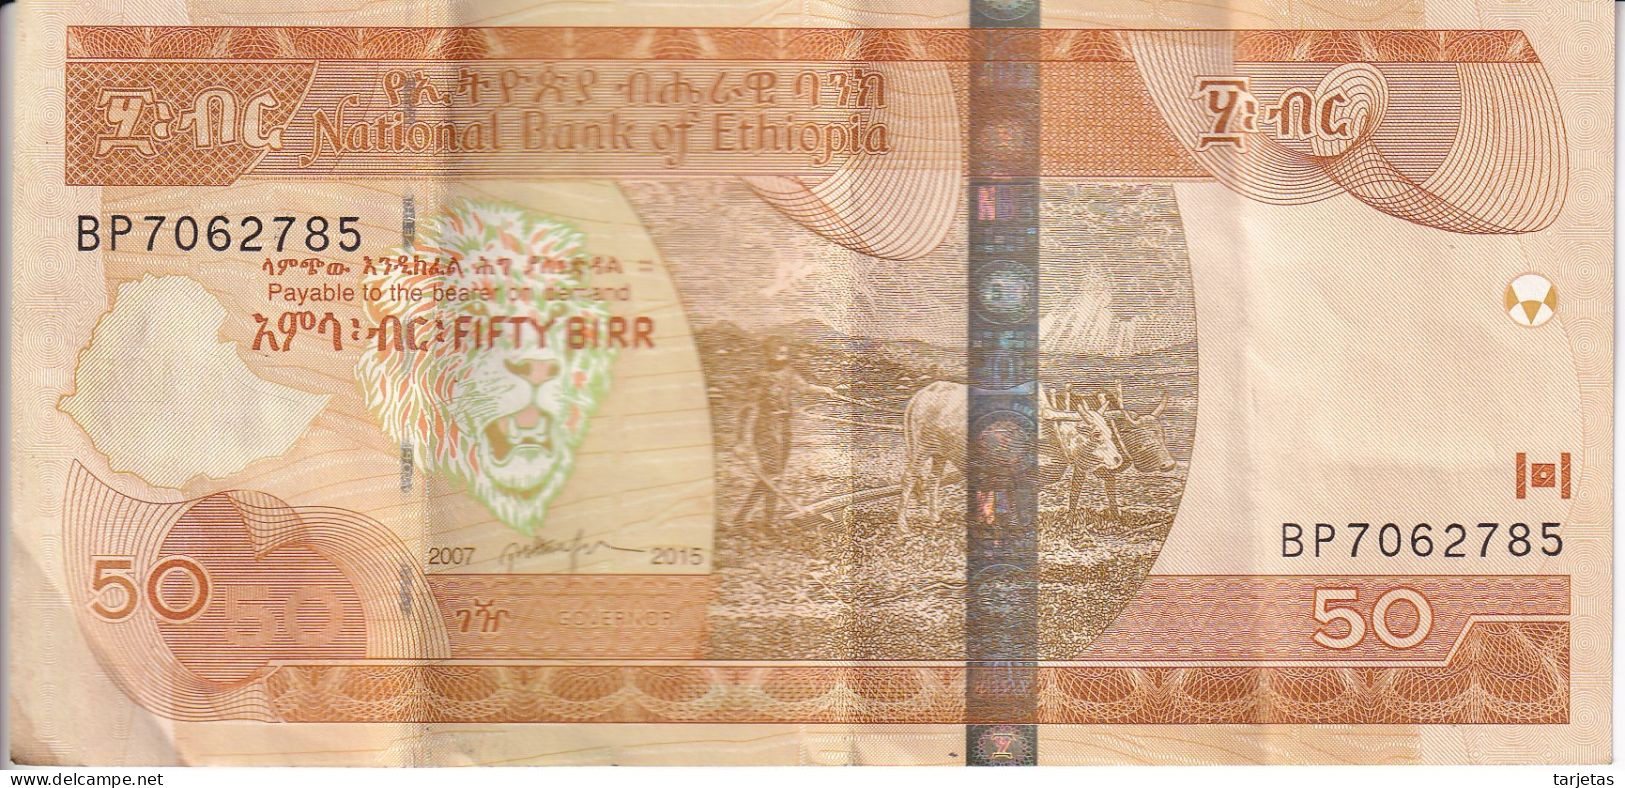 BILLETE DE ETIOPIA DE 50 BIRR DEL AÑO 2007 (BANK NOTE) - Ethiopie